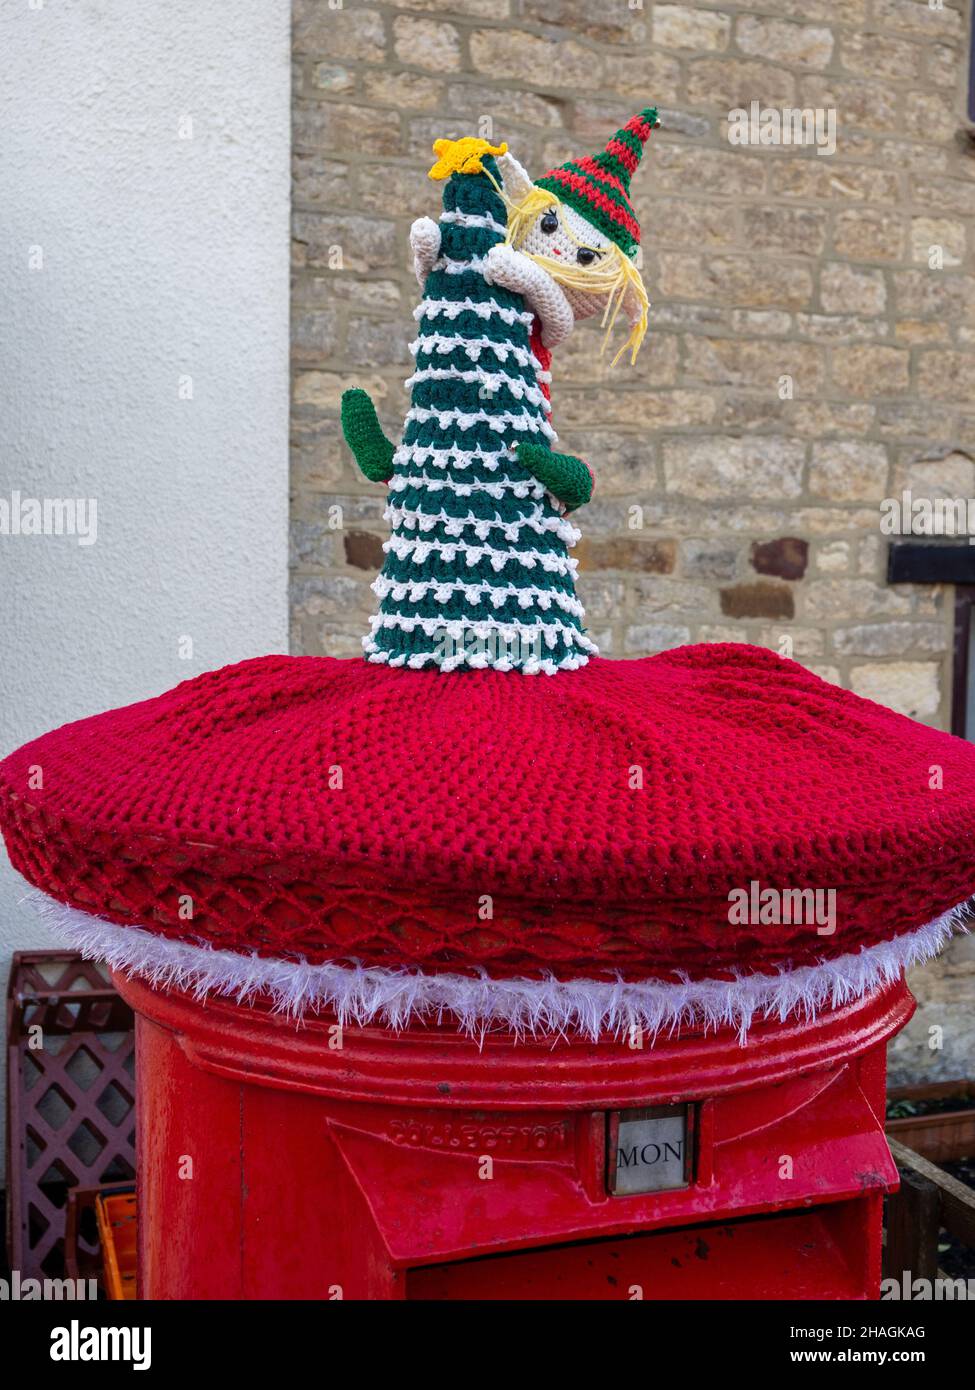 Red Royal Mail posta casella sormontata con una decorazione a maglia di Natale, o bombardiere di filo, nel villaggio di Hackleton, Northamptonshire, Regno Unito Foto Stock